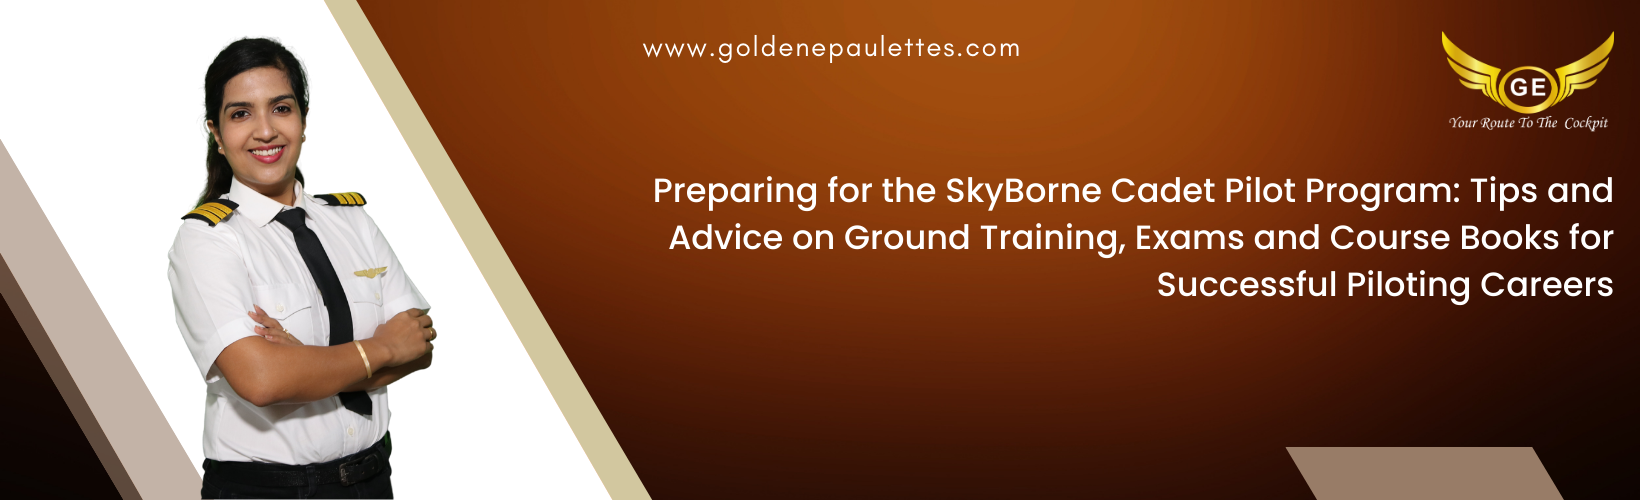 Preparing for the SkyBorne Cadet Pilot Program